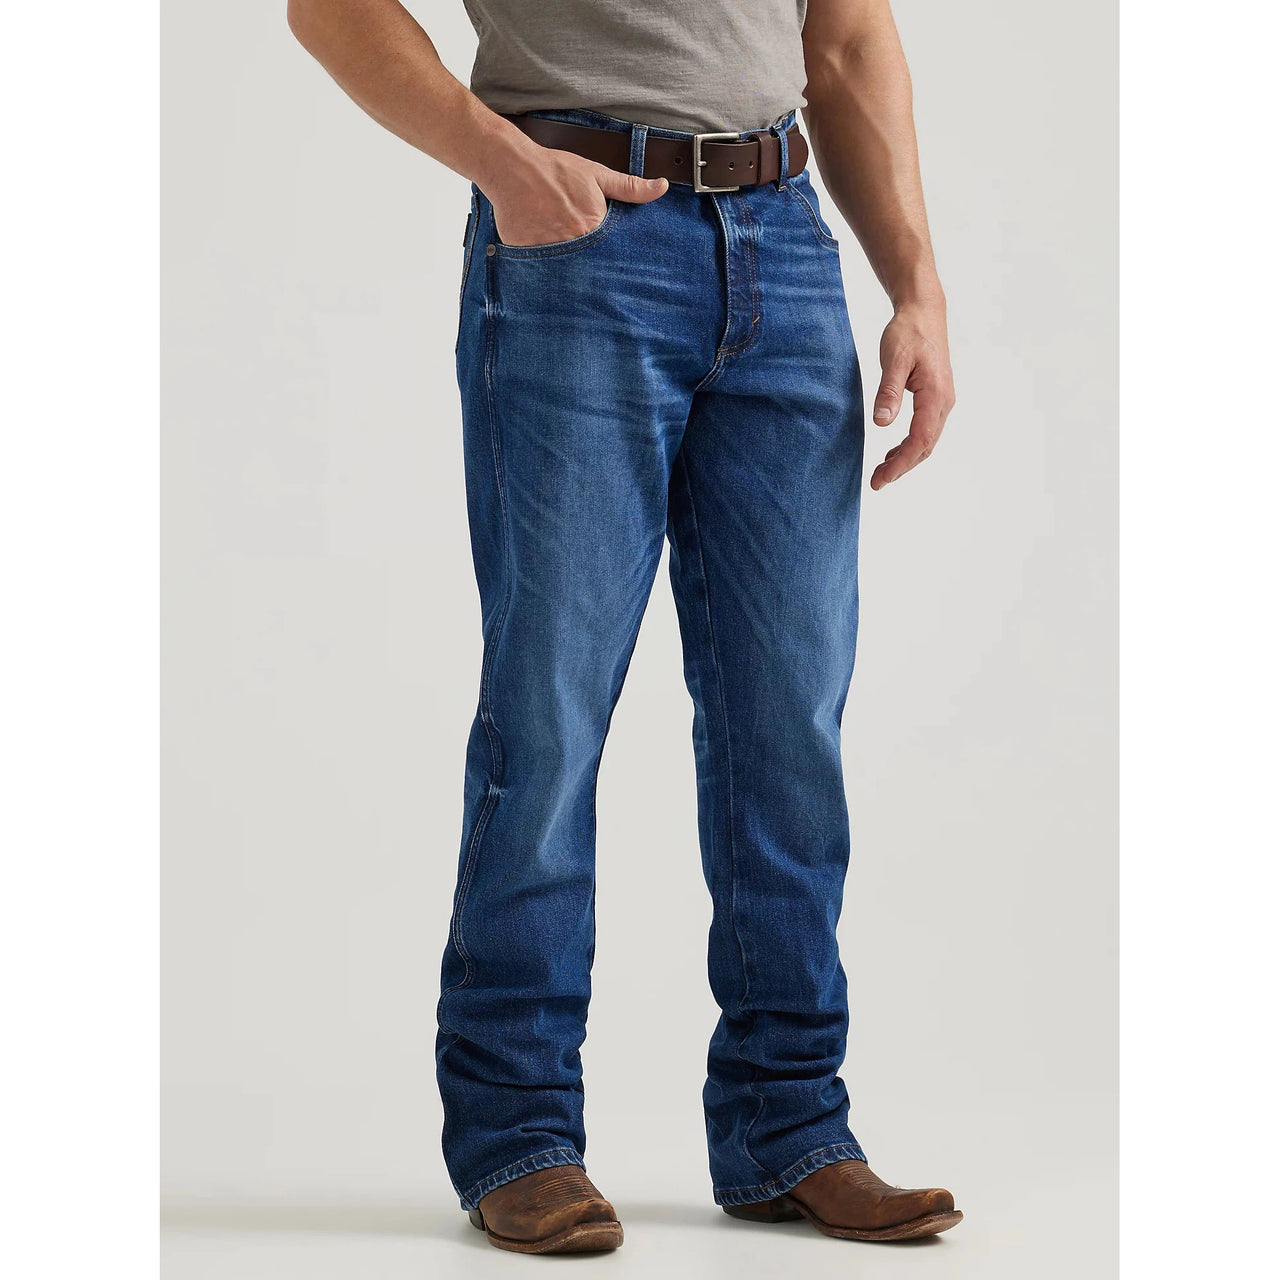 Wrangler Men's Retro Relaxed Bootcut Jeans -